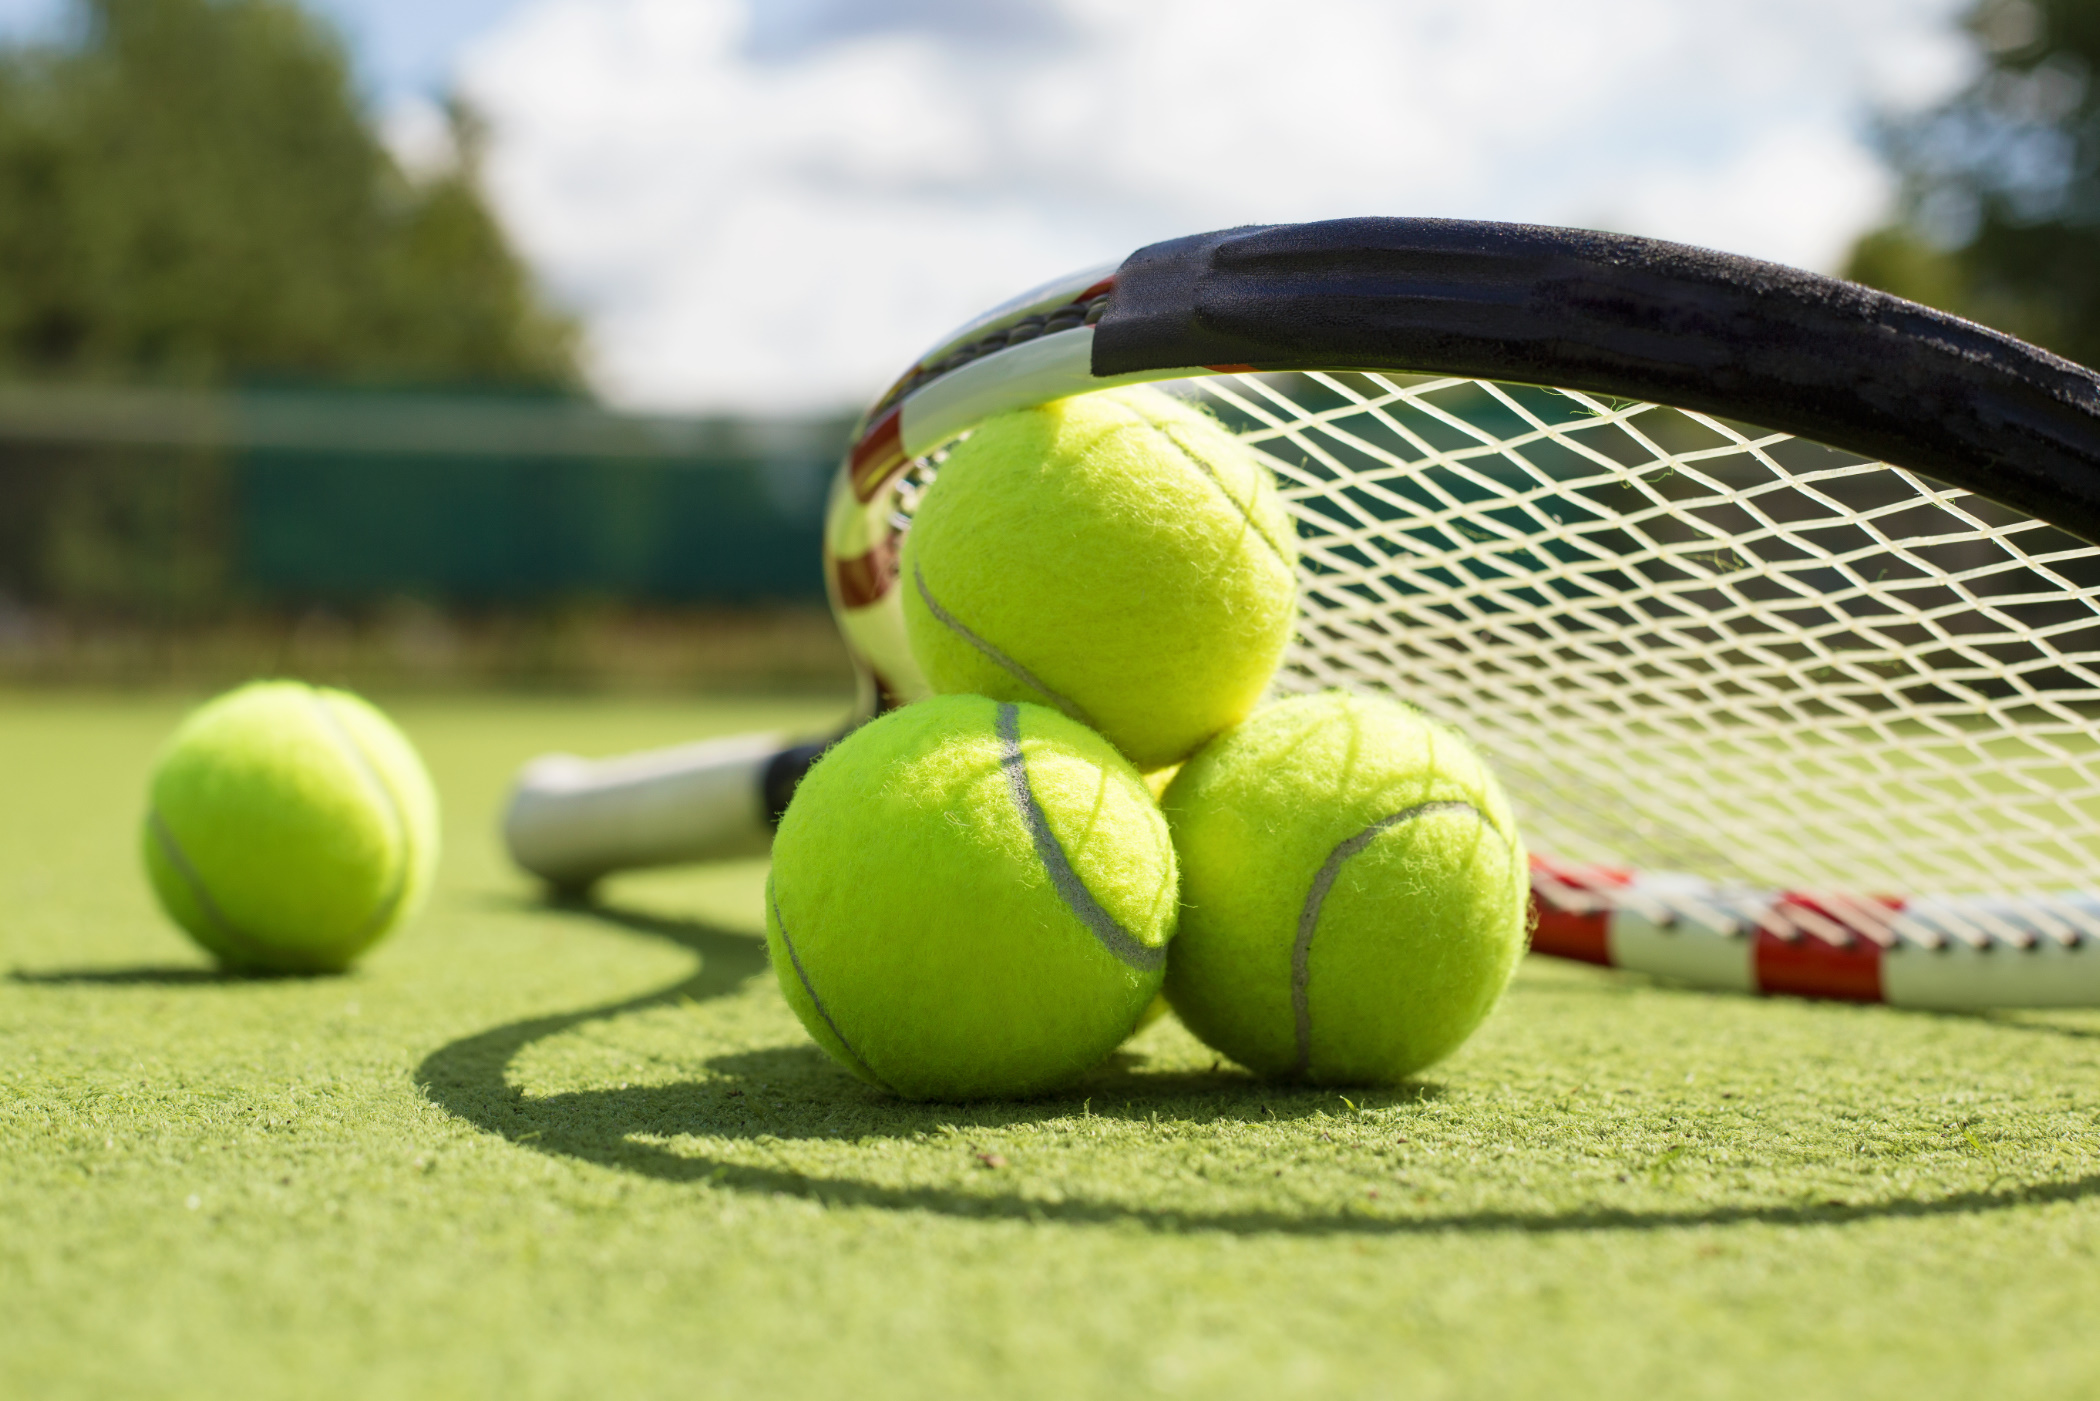 令和4年度近県古河テニス大会案内（ミックス、男女シングルス）要項が発表されました